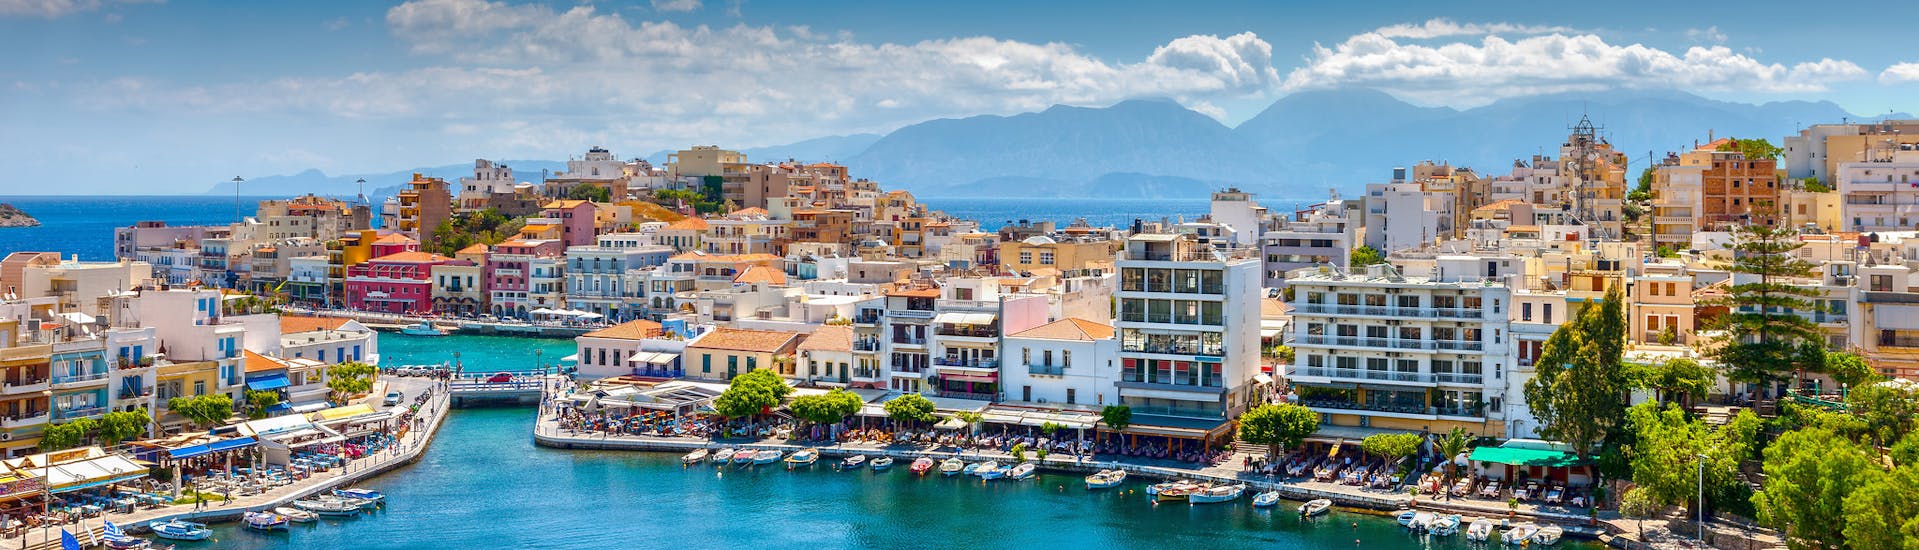 Privé boottocht van Elounda naar Spinalonga met zwemmen & toeristische attracties